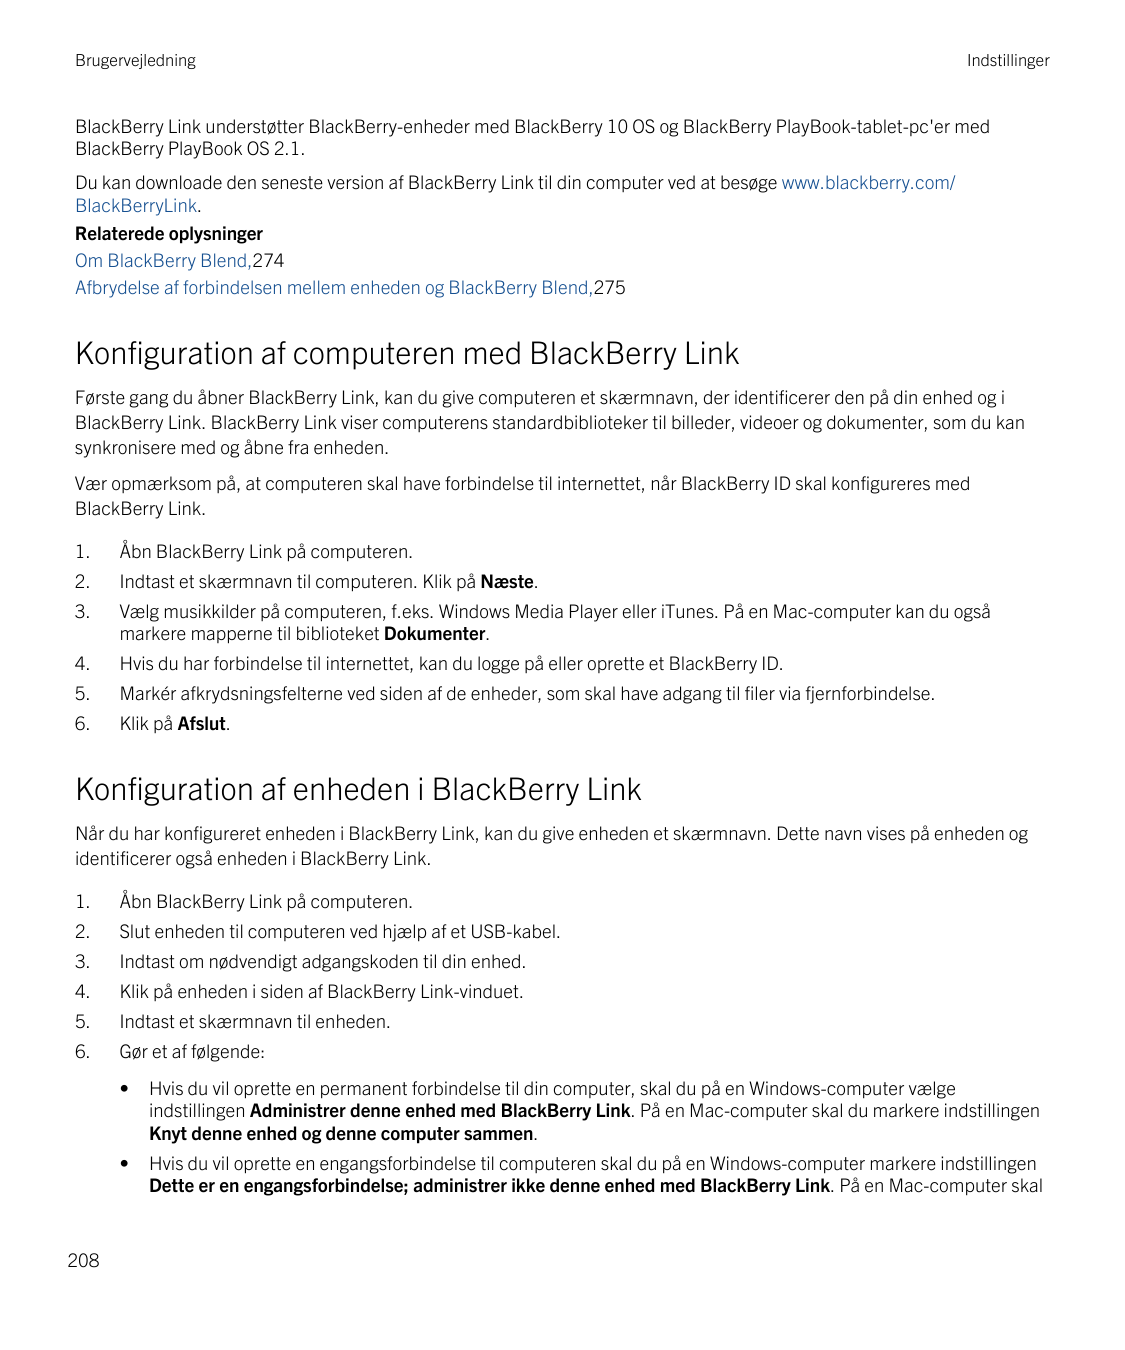 BrugervejledningIndstillingerBlackBerry Link understøtter BlackBerry-enheder med BlackBerry 10 OS og BlackBerry PlayBook-tablet-